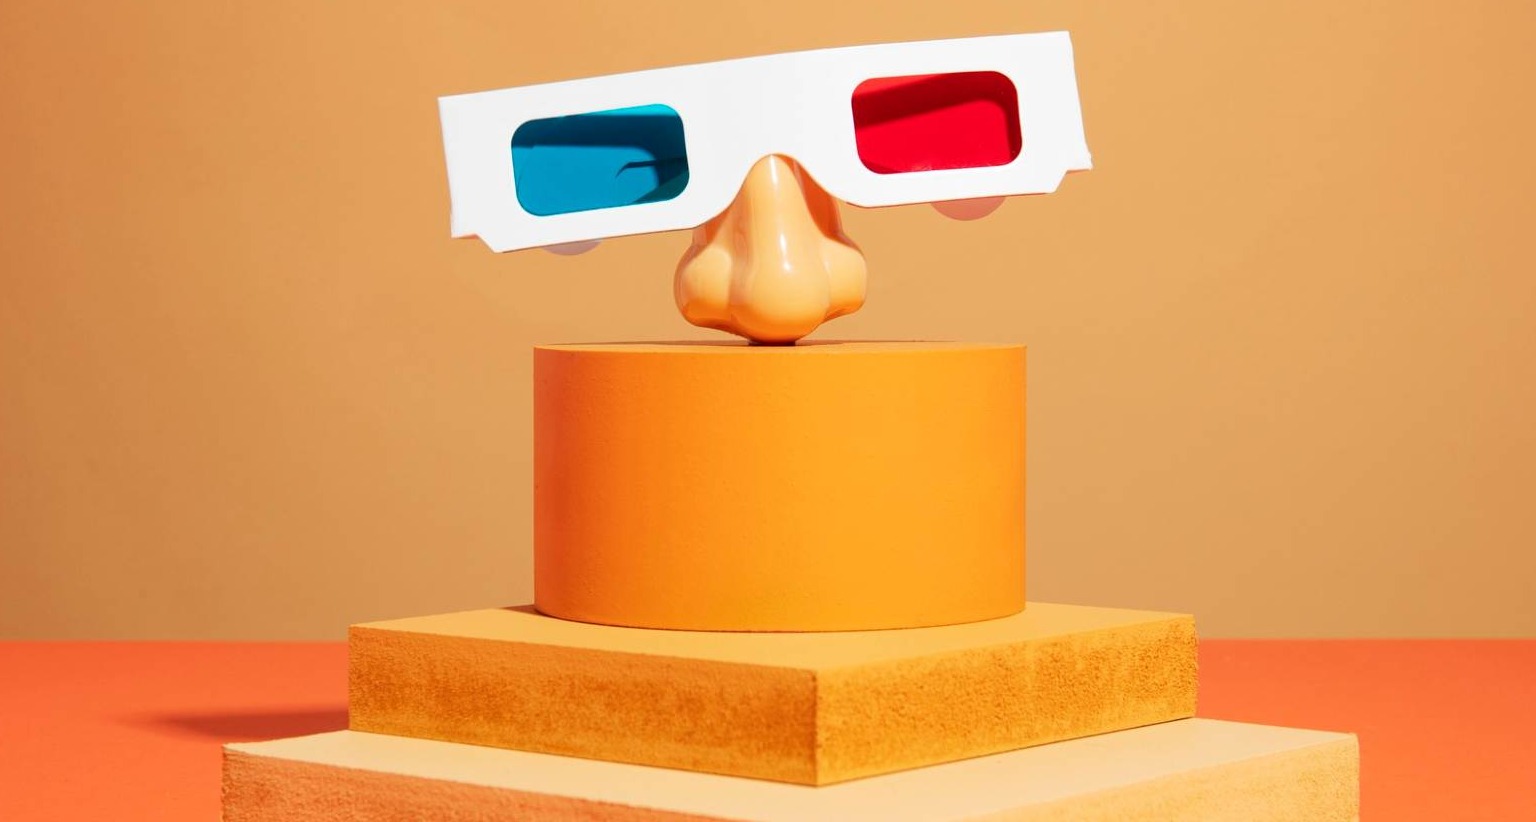 Gafas de 3D sobre una peana